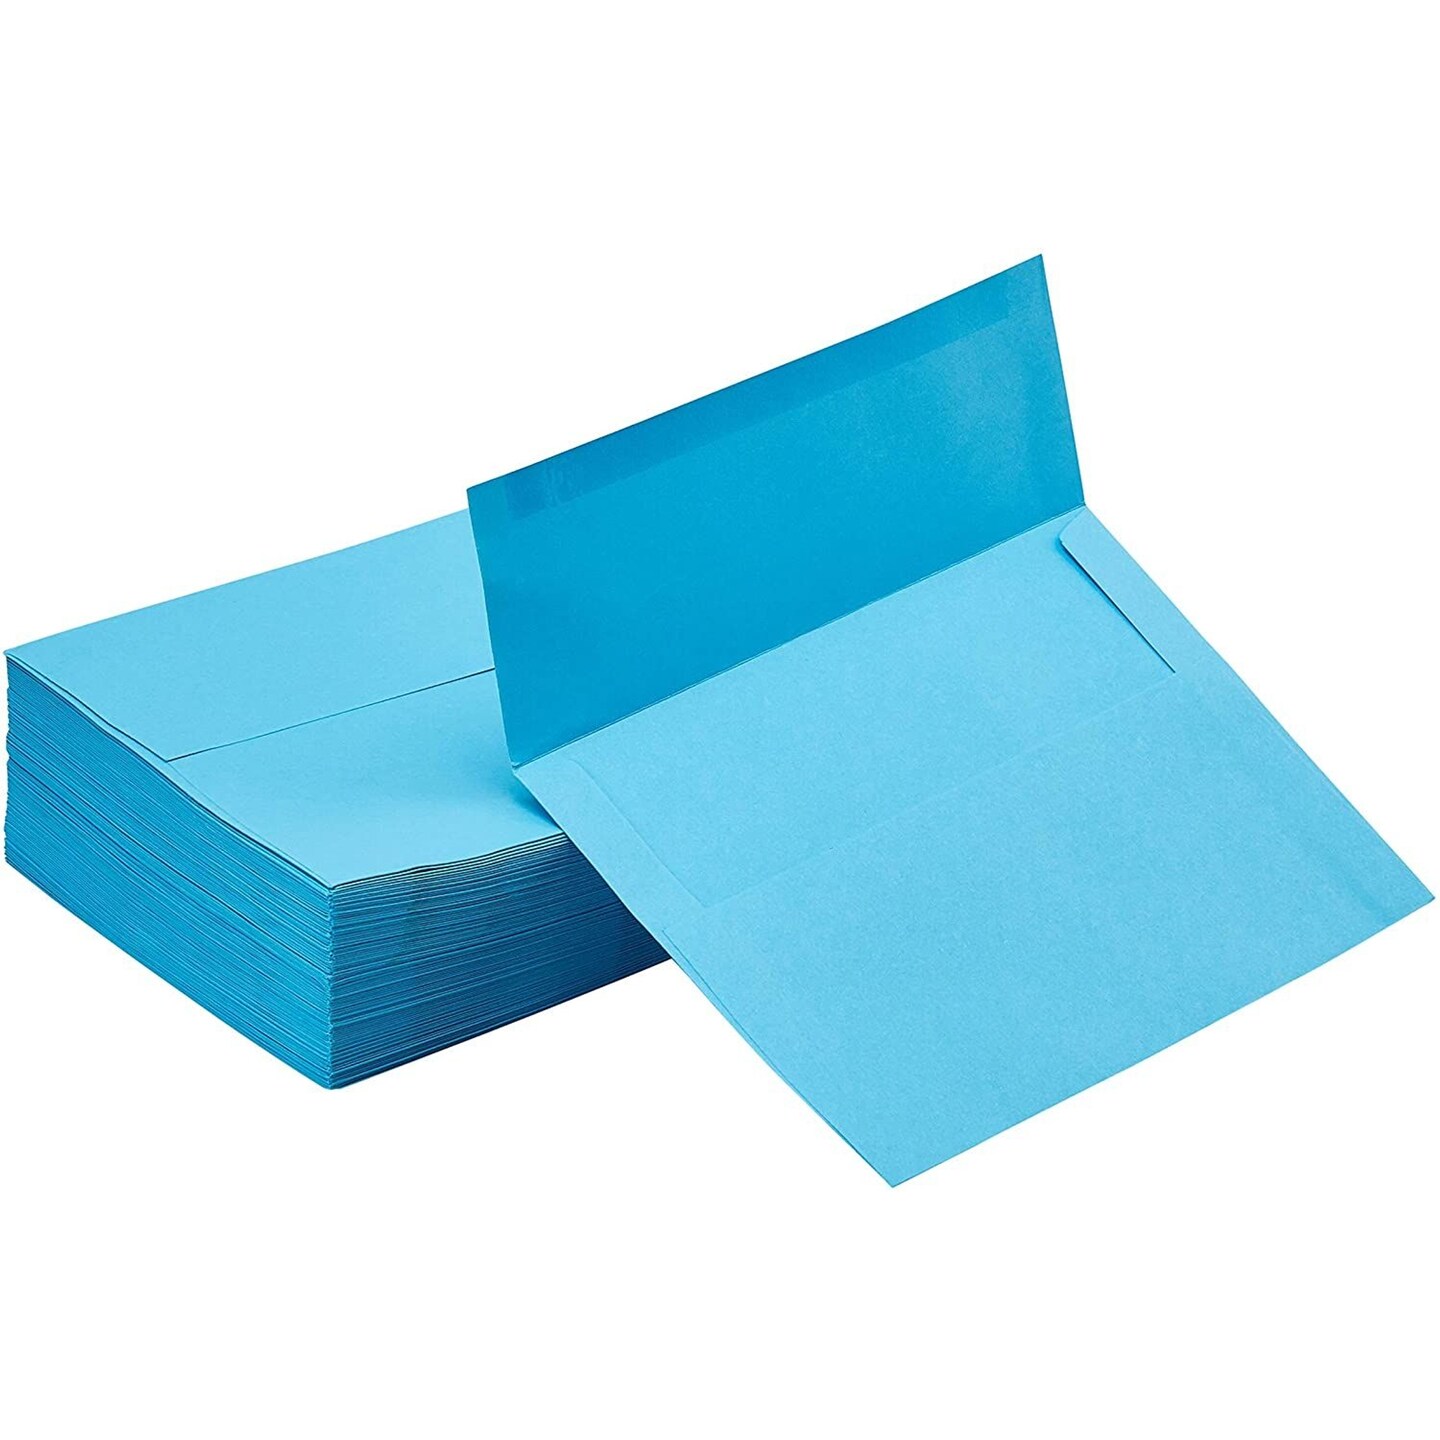 A7 Envelopes - 100 Pack Invitation Envelopes, 5x7 Gummed Seal